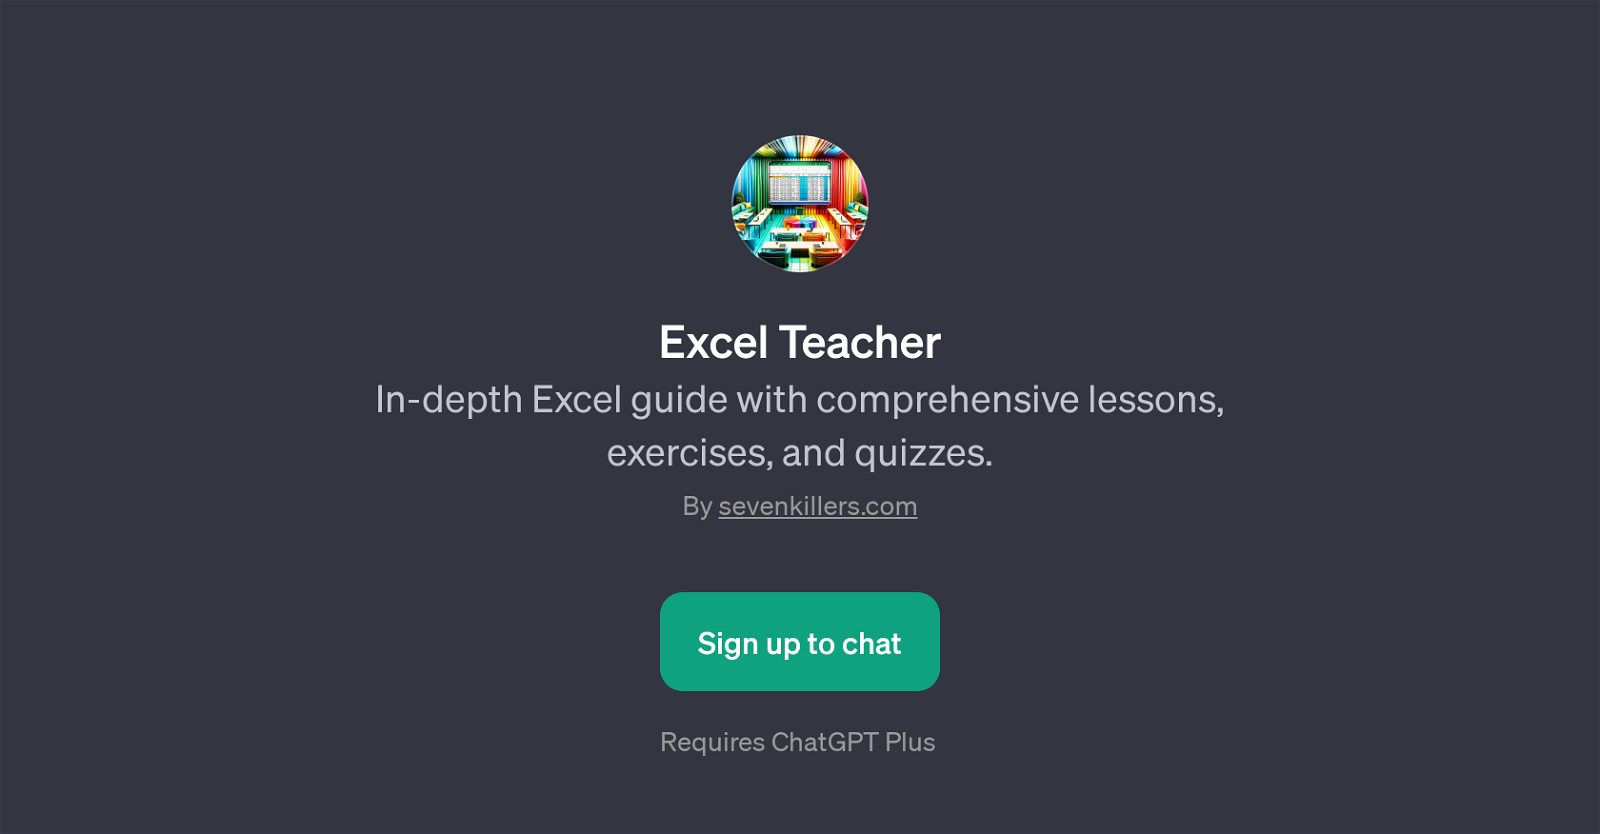 Excel Teacher website